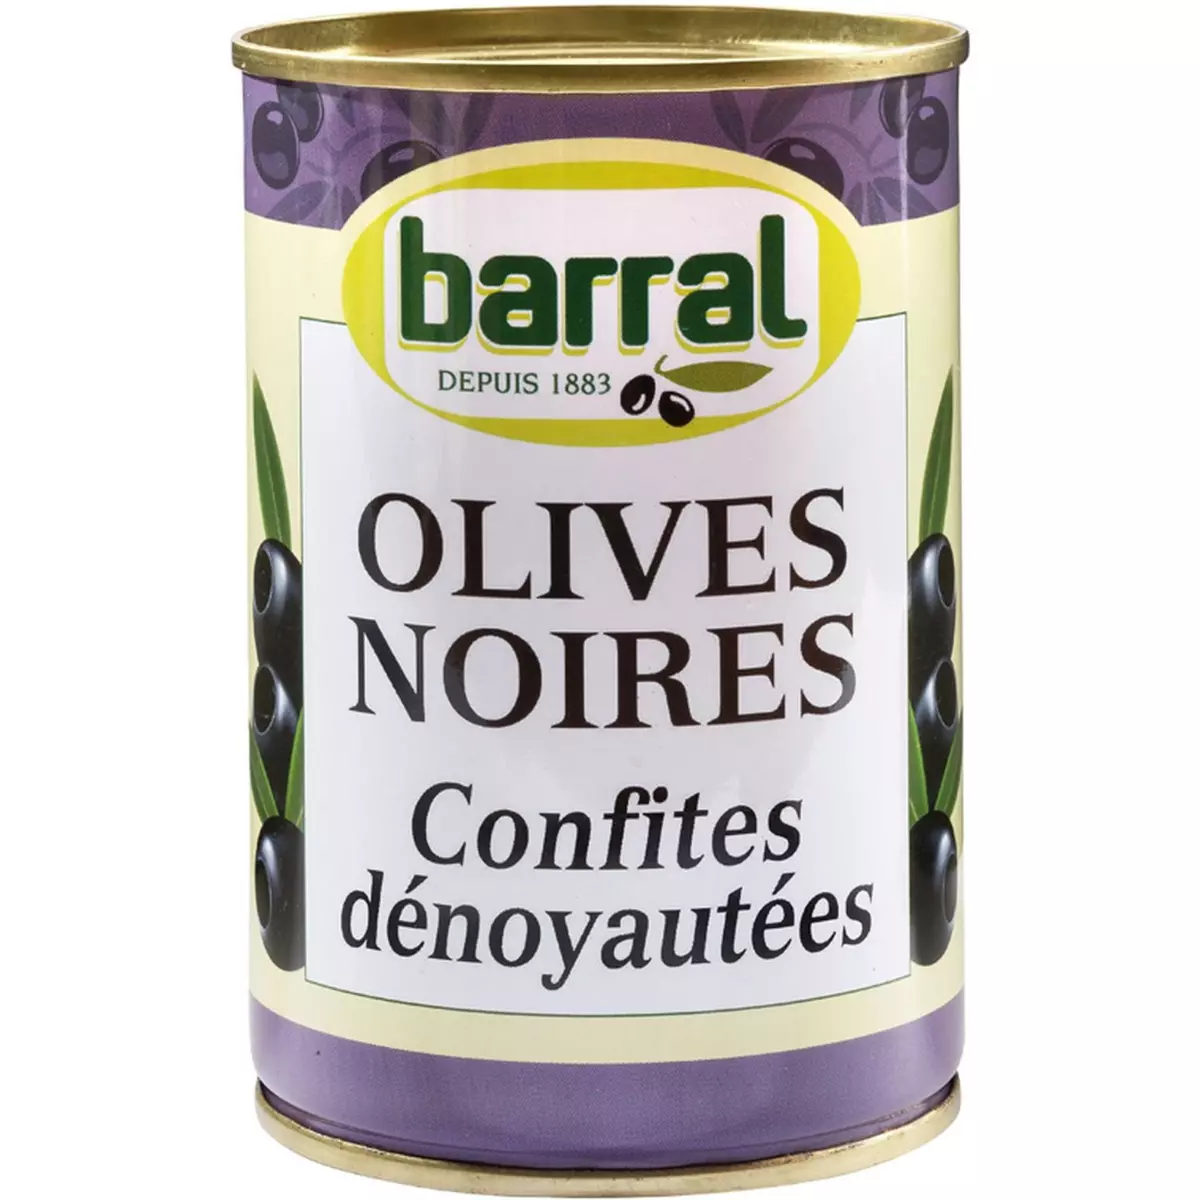 BARRAL Olives noires confites dénoyautées 400g